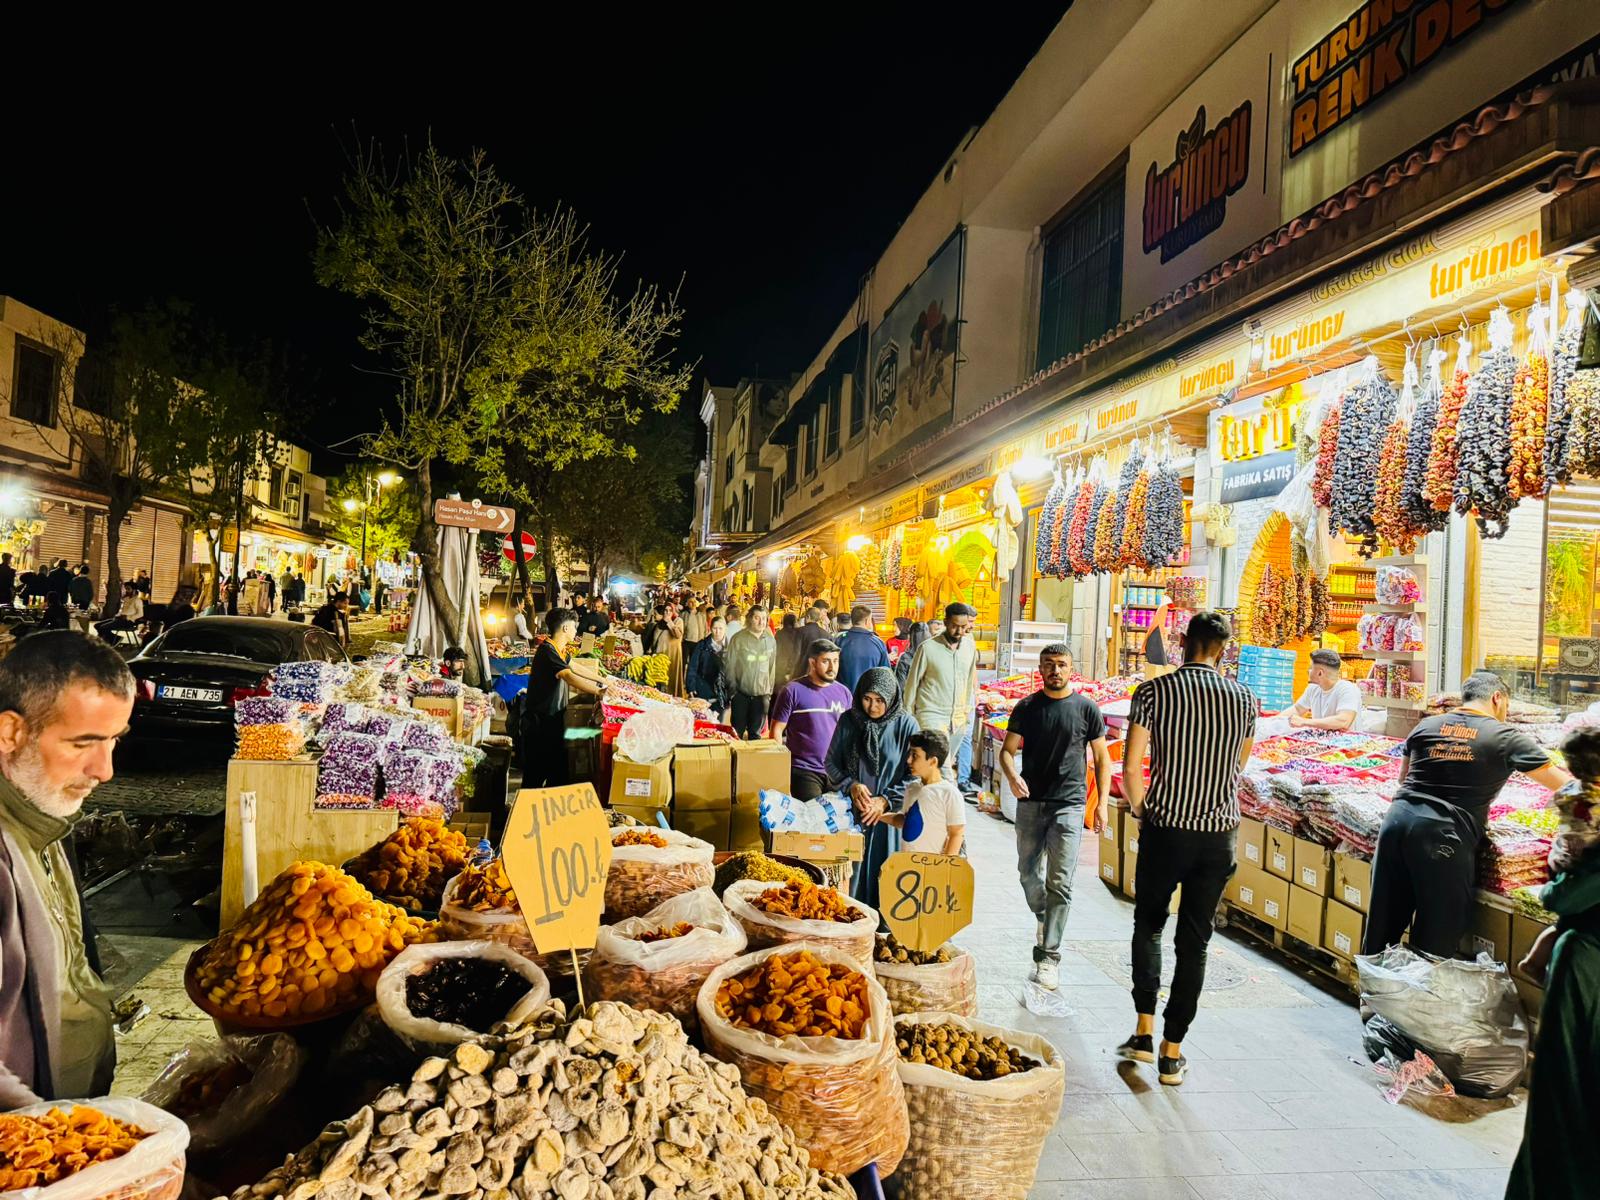 VİDEO - Diyarbakır Surda bayrama 3 kala bir akşam